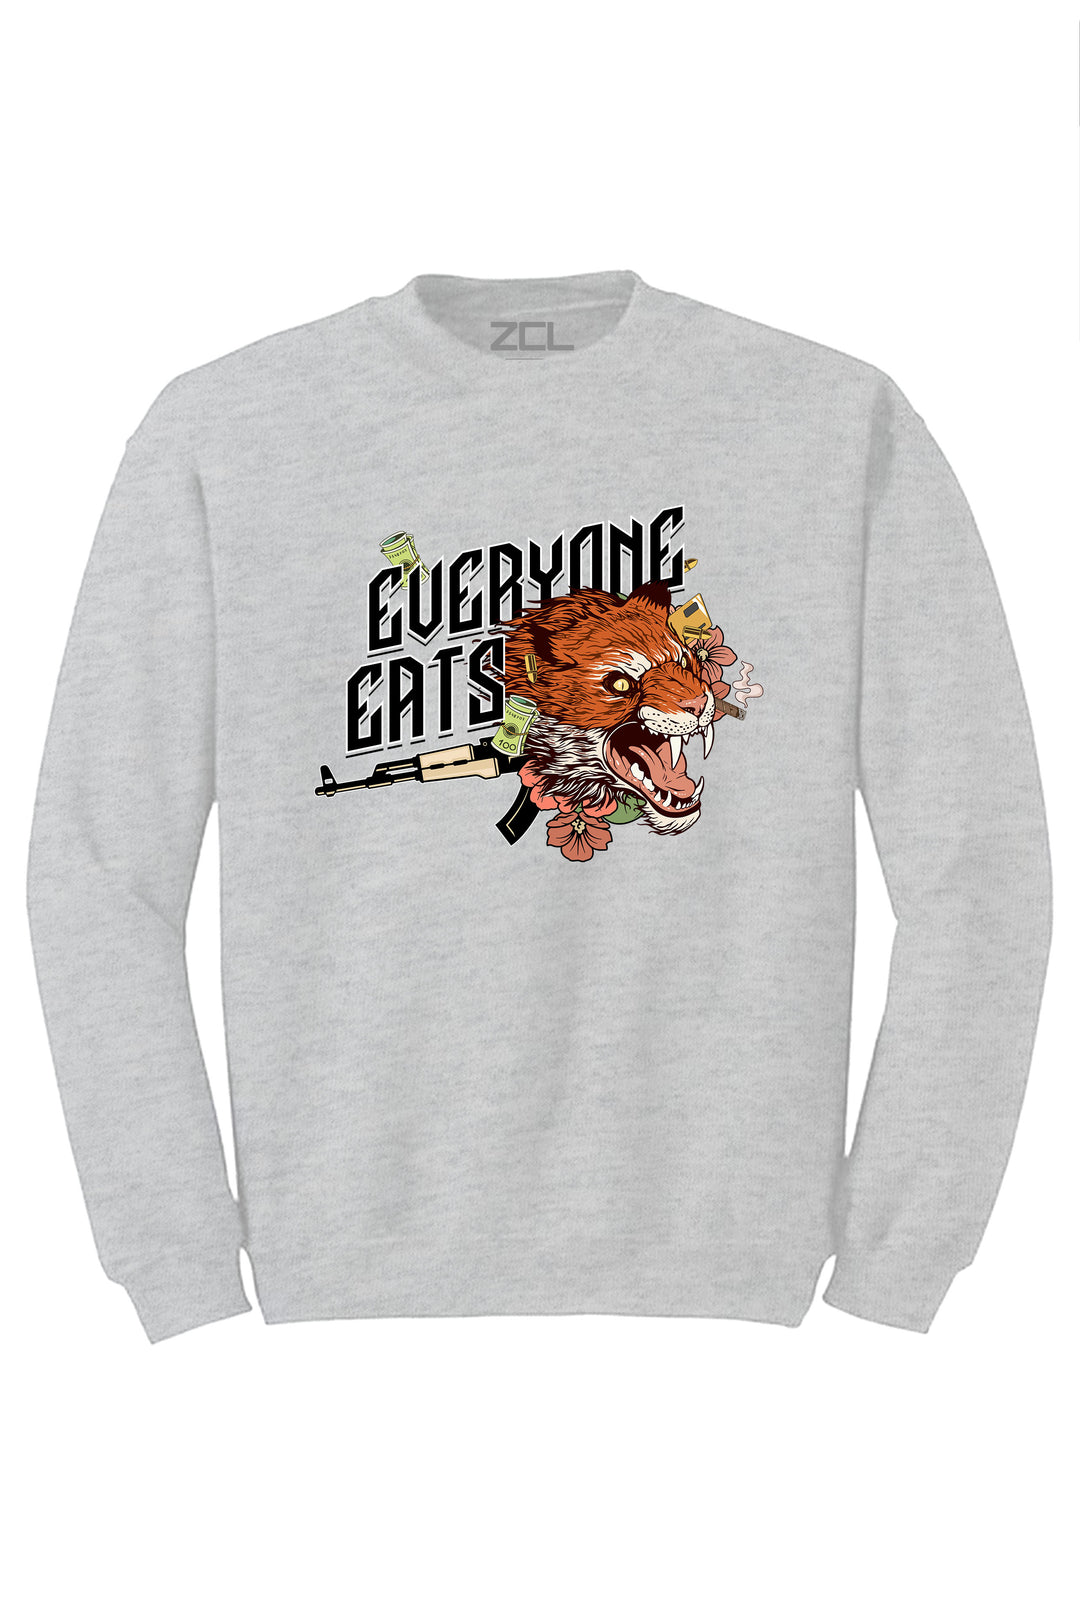 Everyone Eats Crewneck Sweatshirt (Multi Color Logo) - Zamage